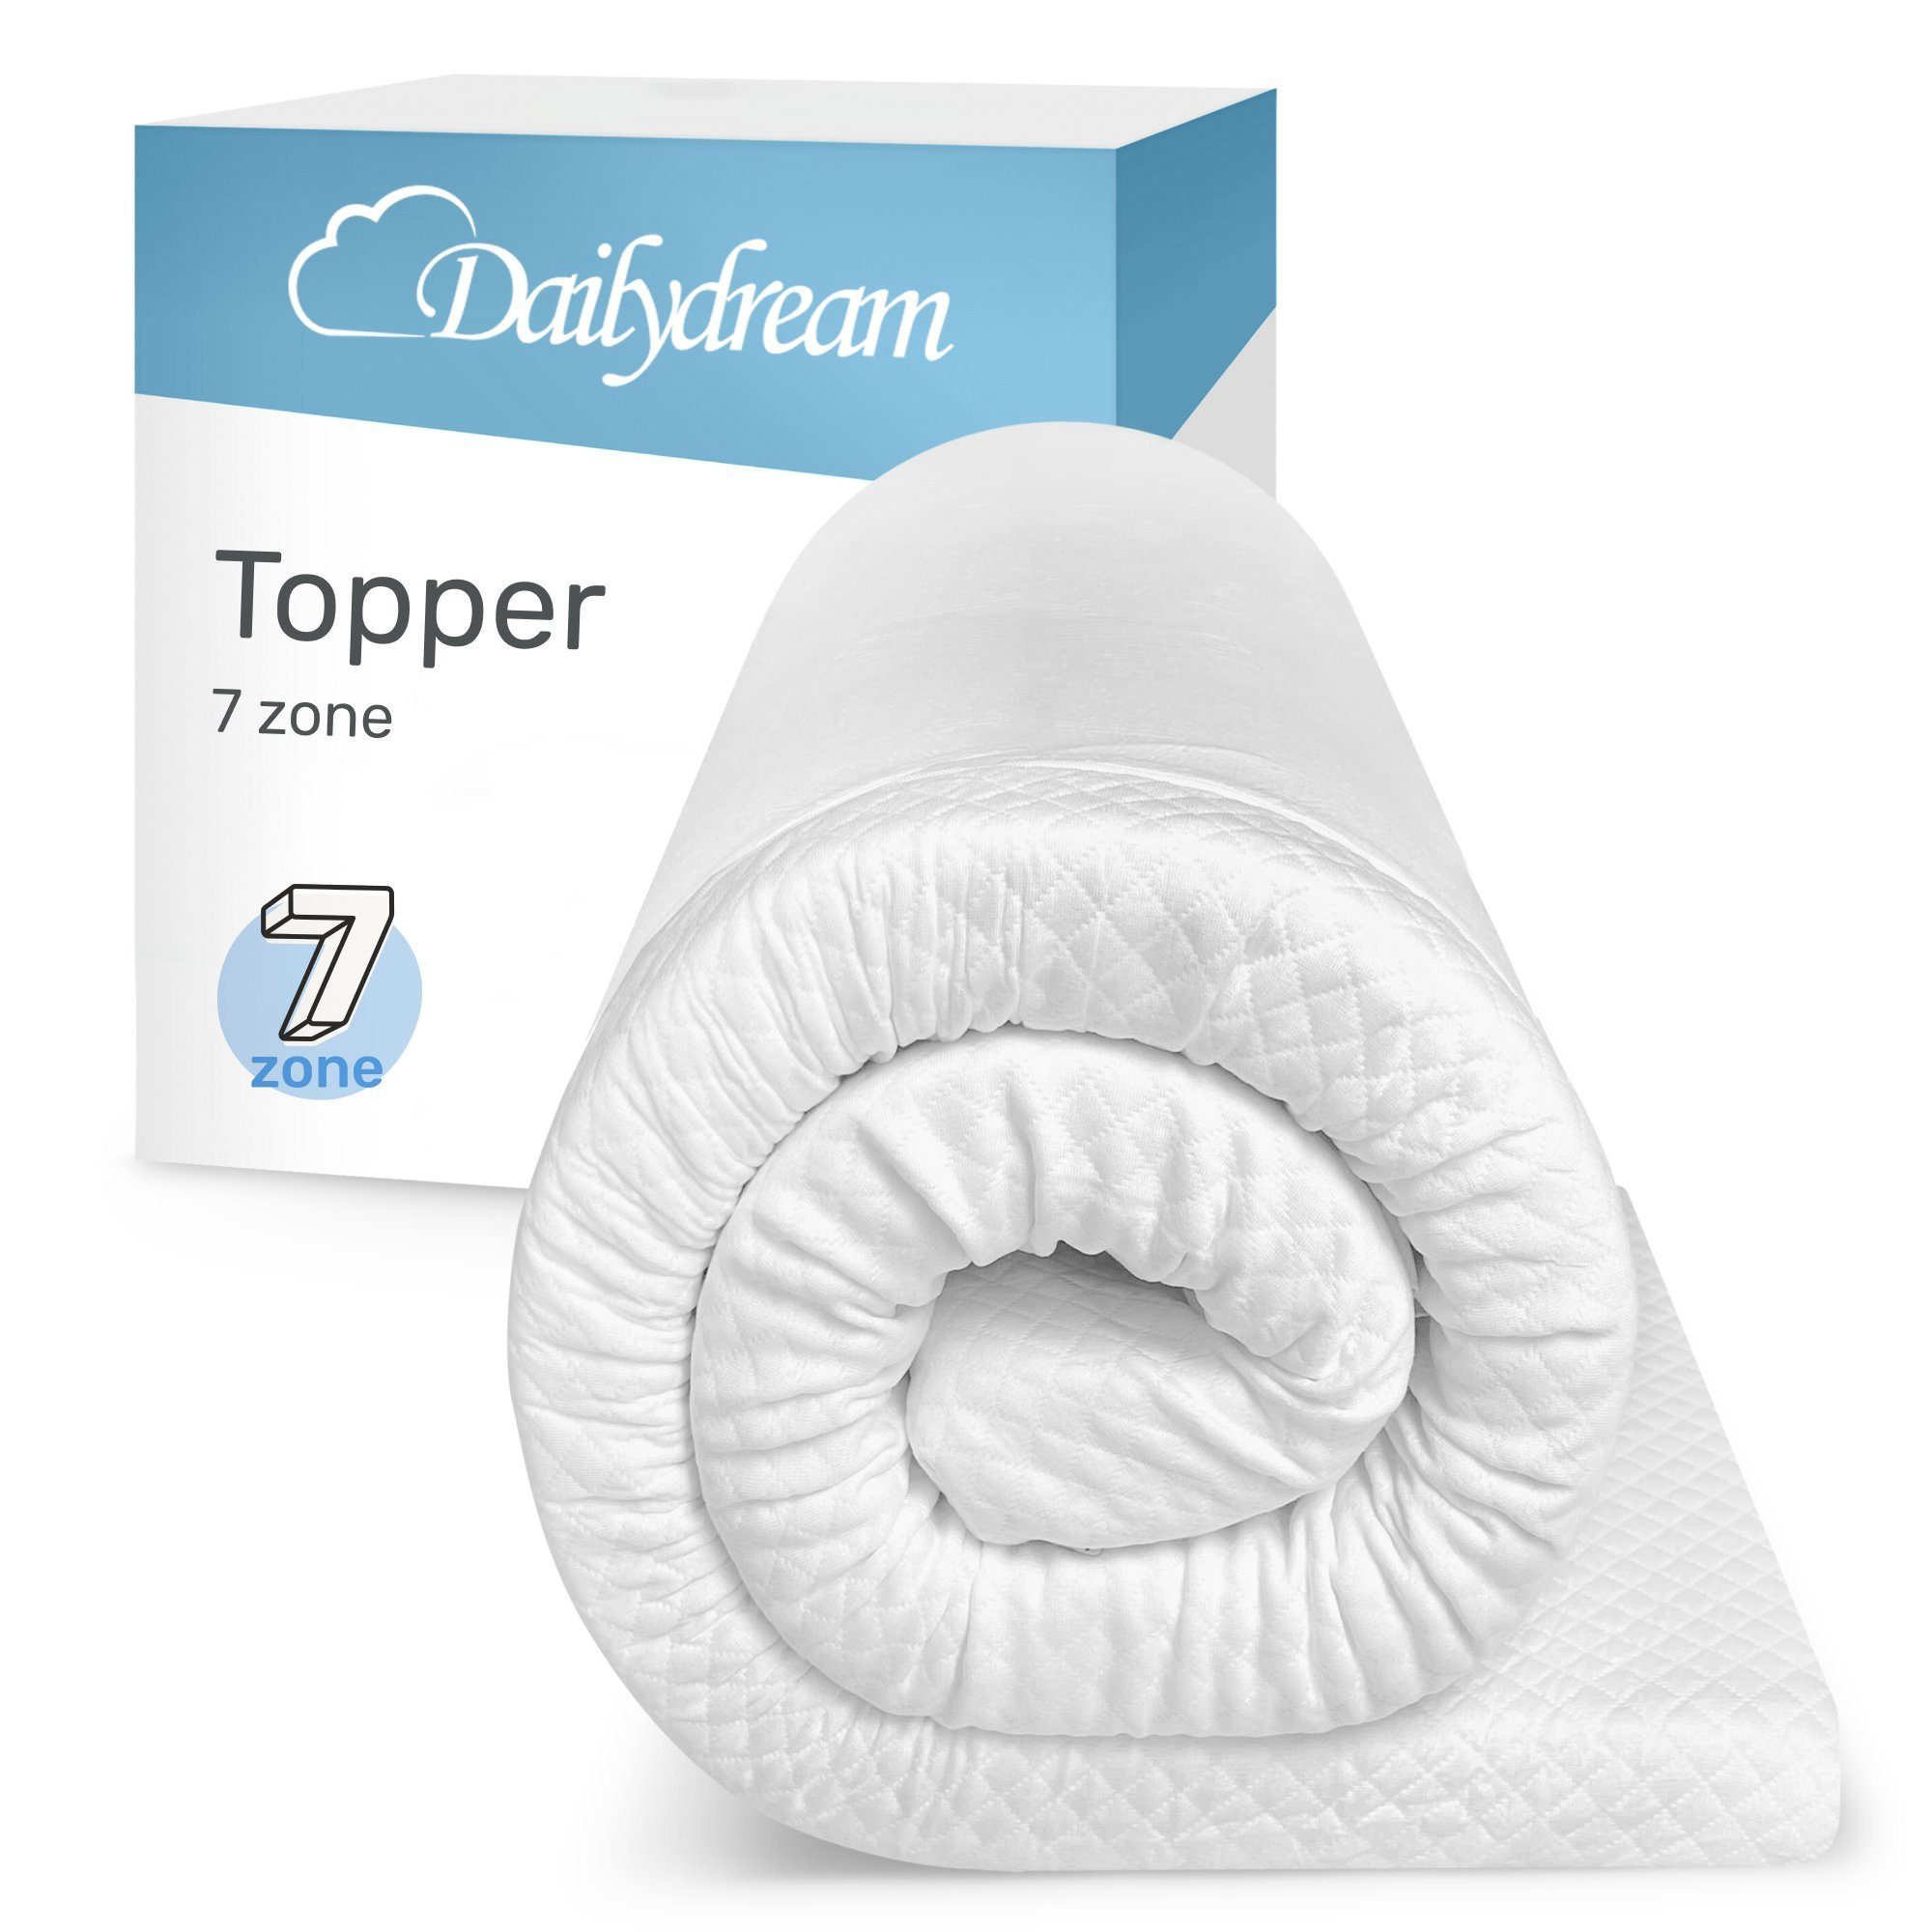 Topper Model "7 Zone" aus Komfortschaum und 7 Liegezonen von, Dailydream, 6 cm hoch, mit 7-Zonen Kern schafft die ideale Schlafposition